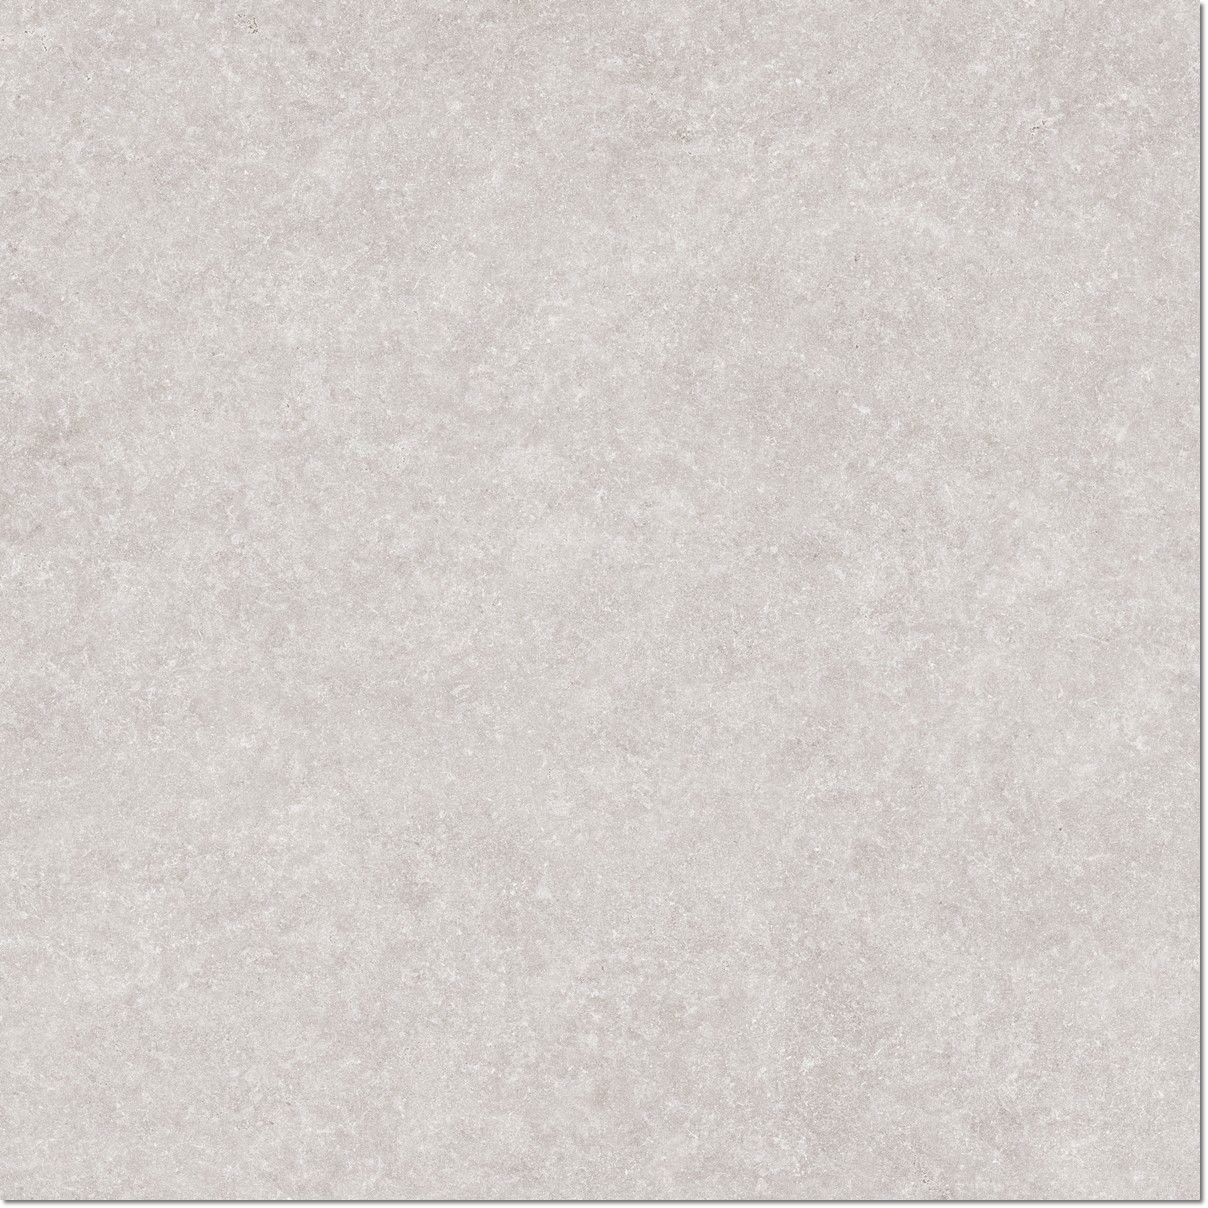 Light Stone White Rett. 60x60